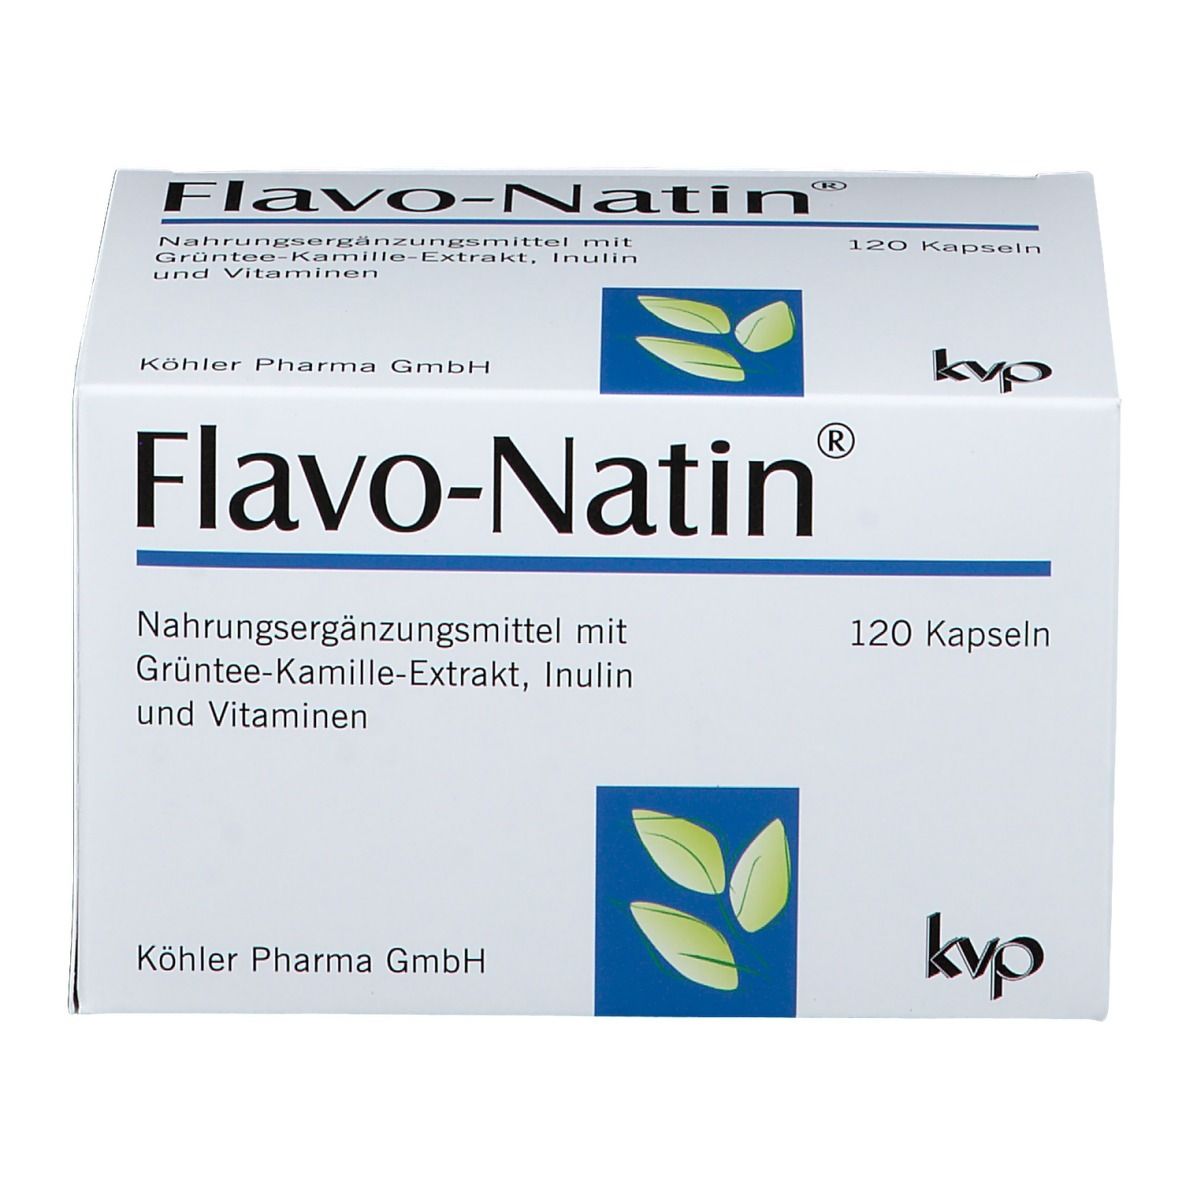 Flavo-Natin® Kapseln